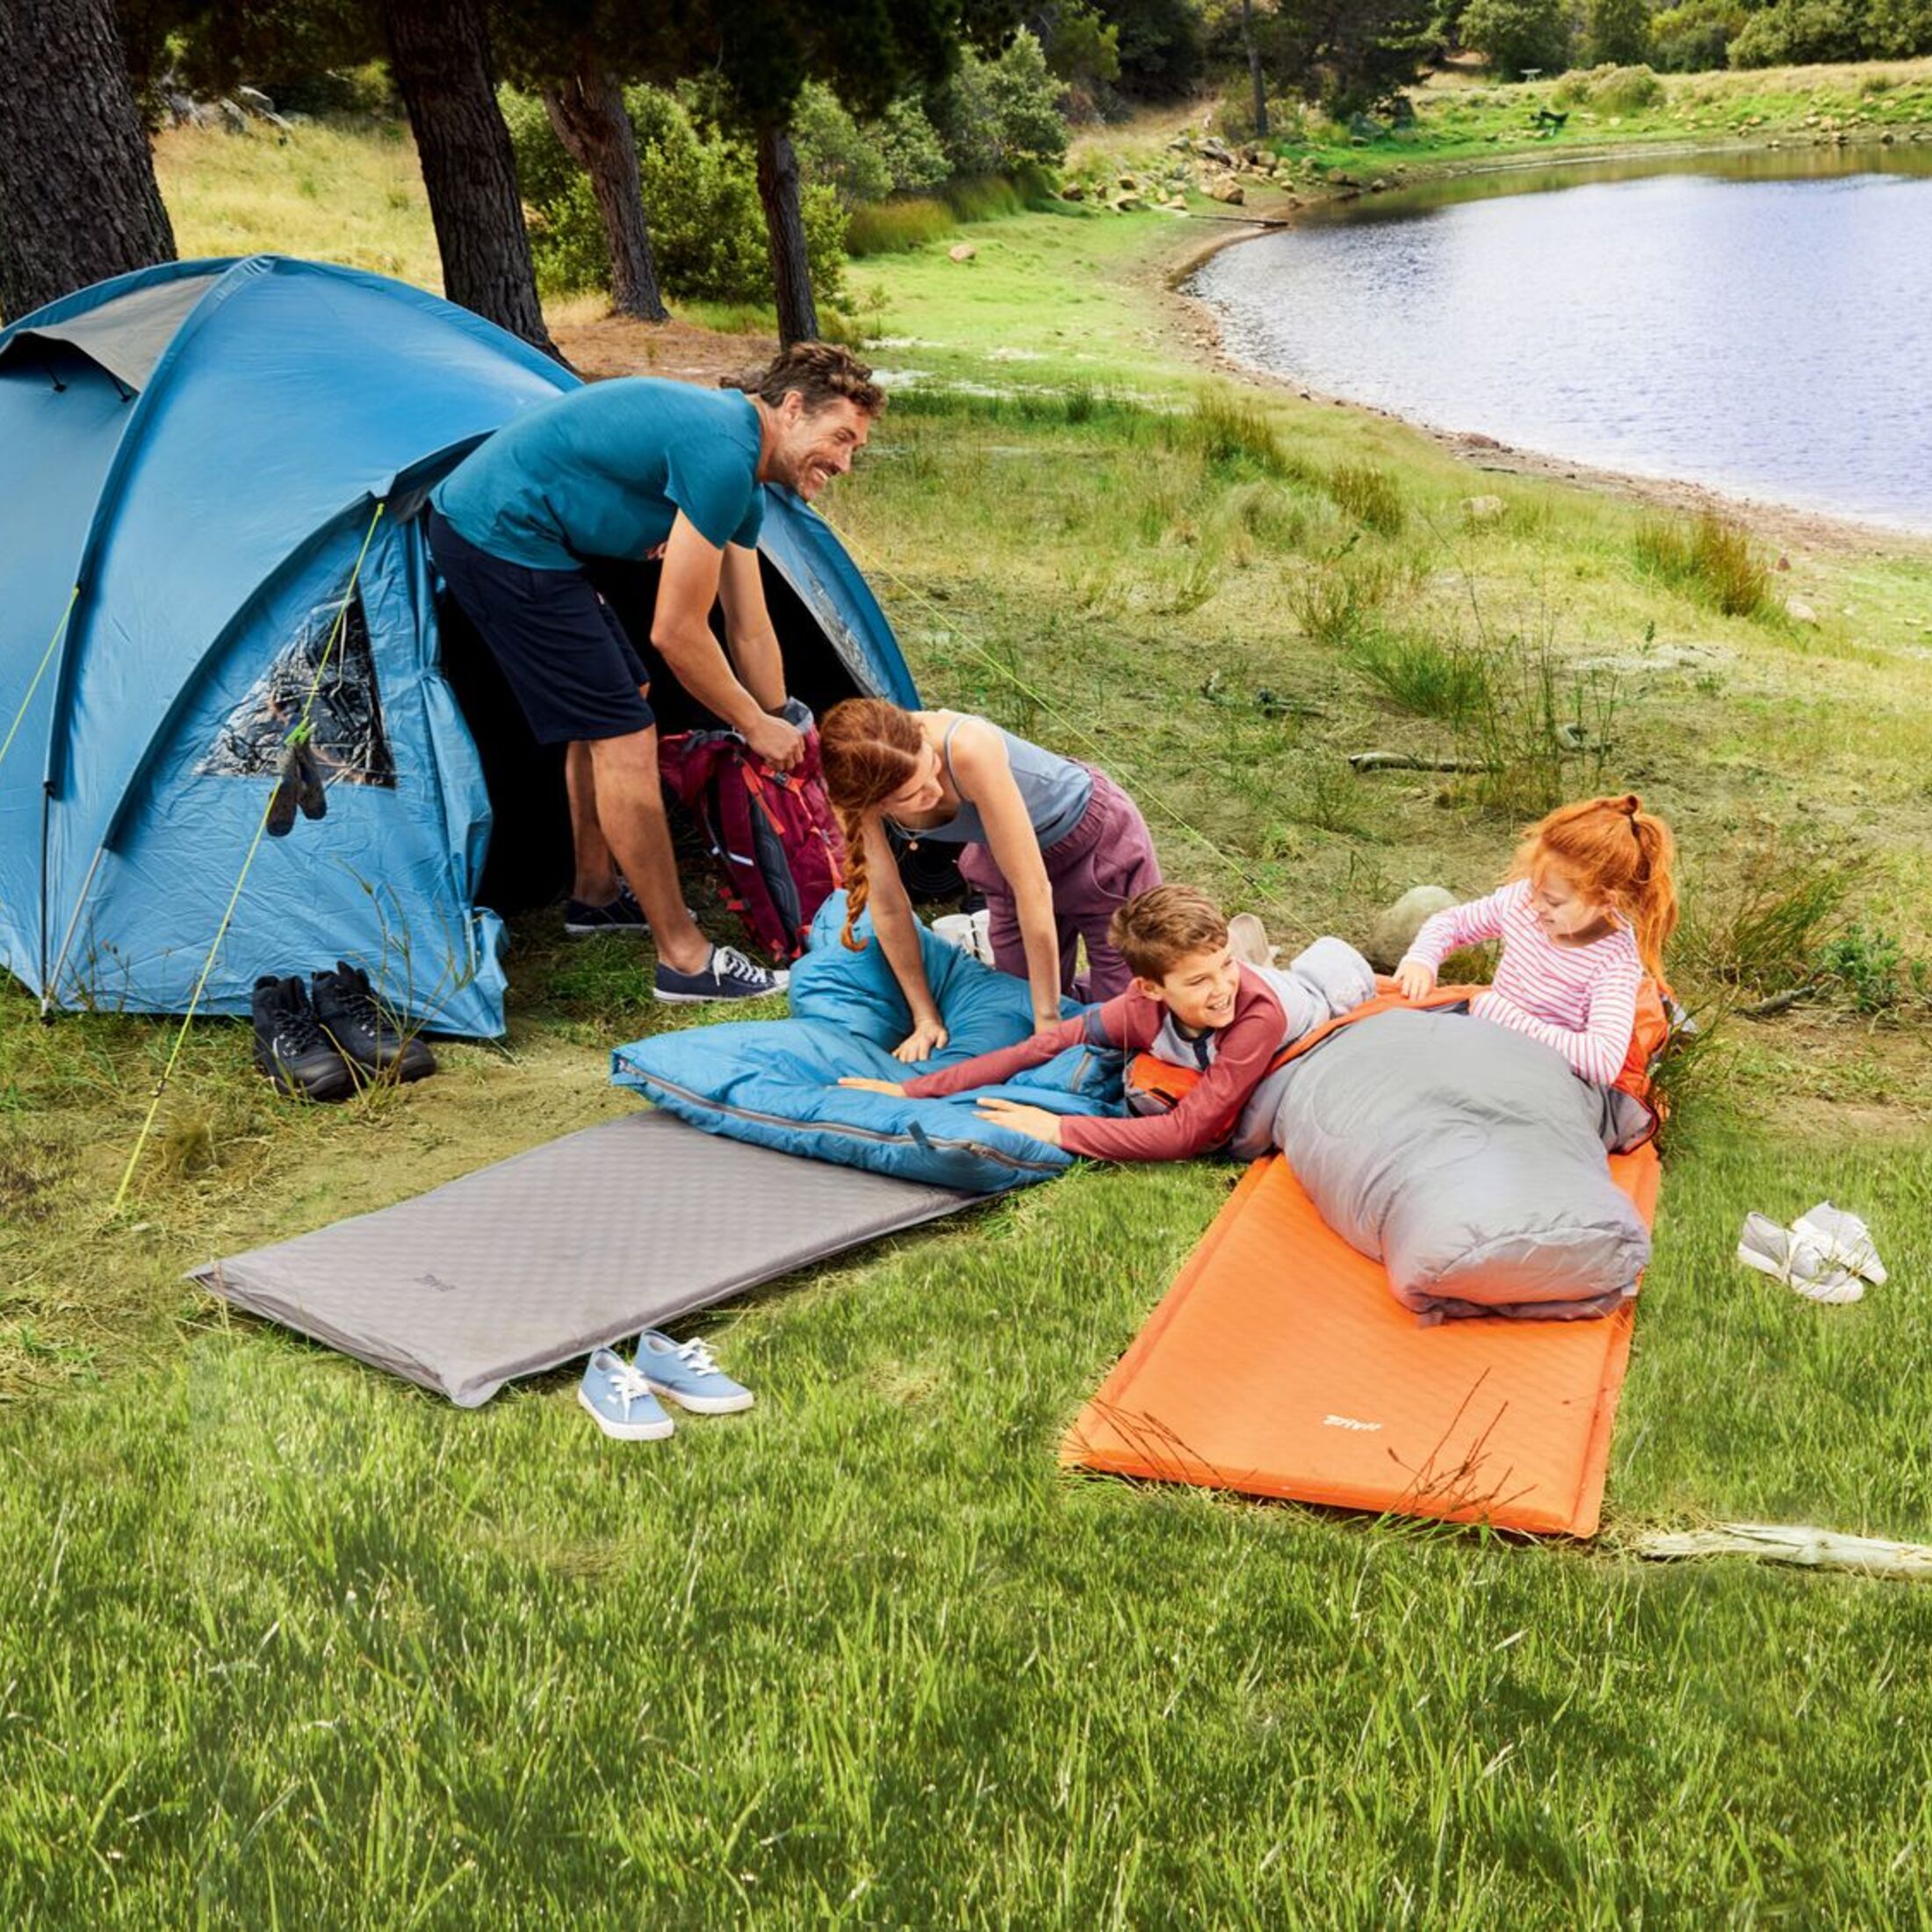 Billigzelte im Test: Was kann Discounter-Camping-Ausrüstung?